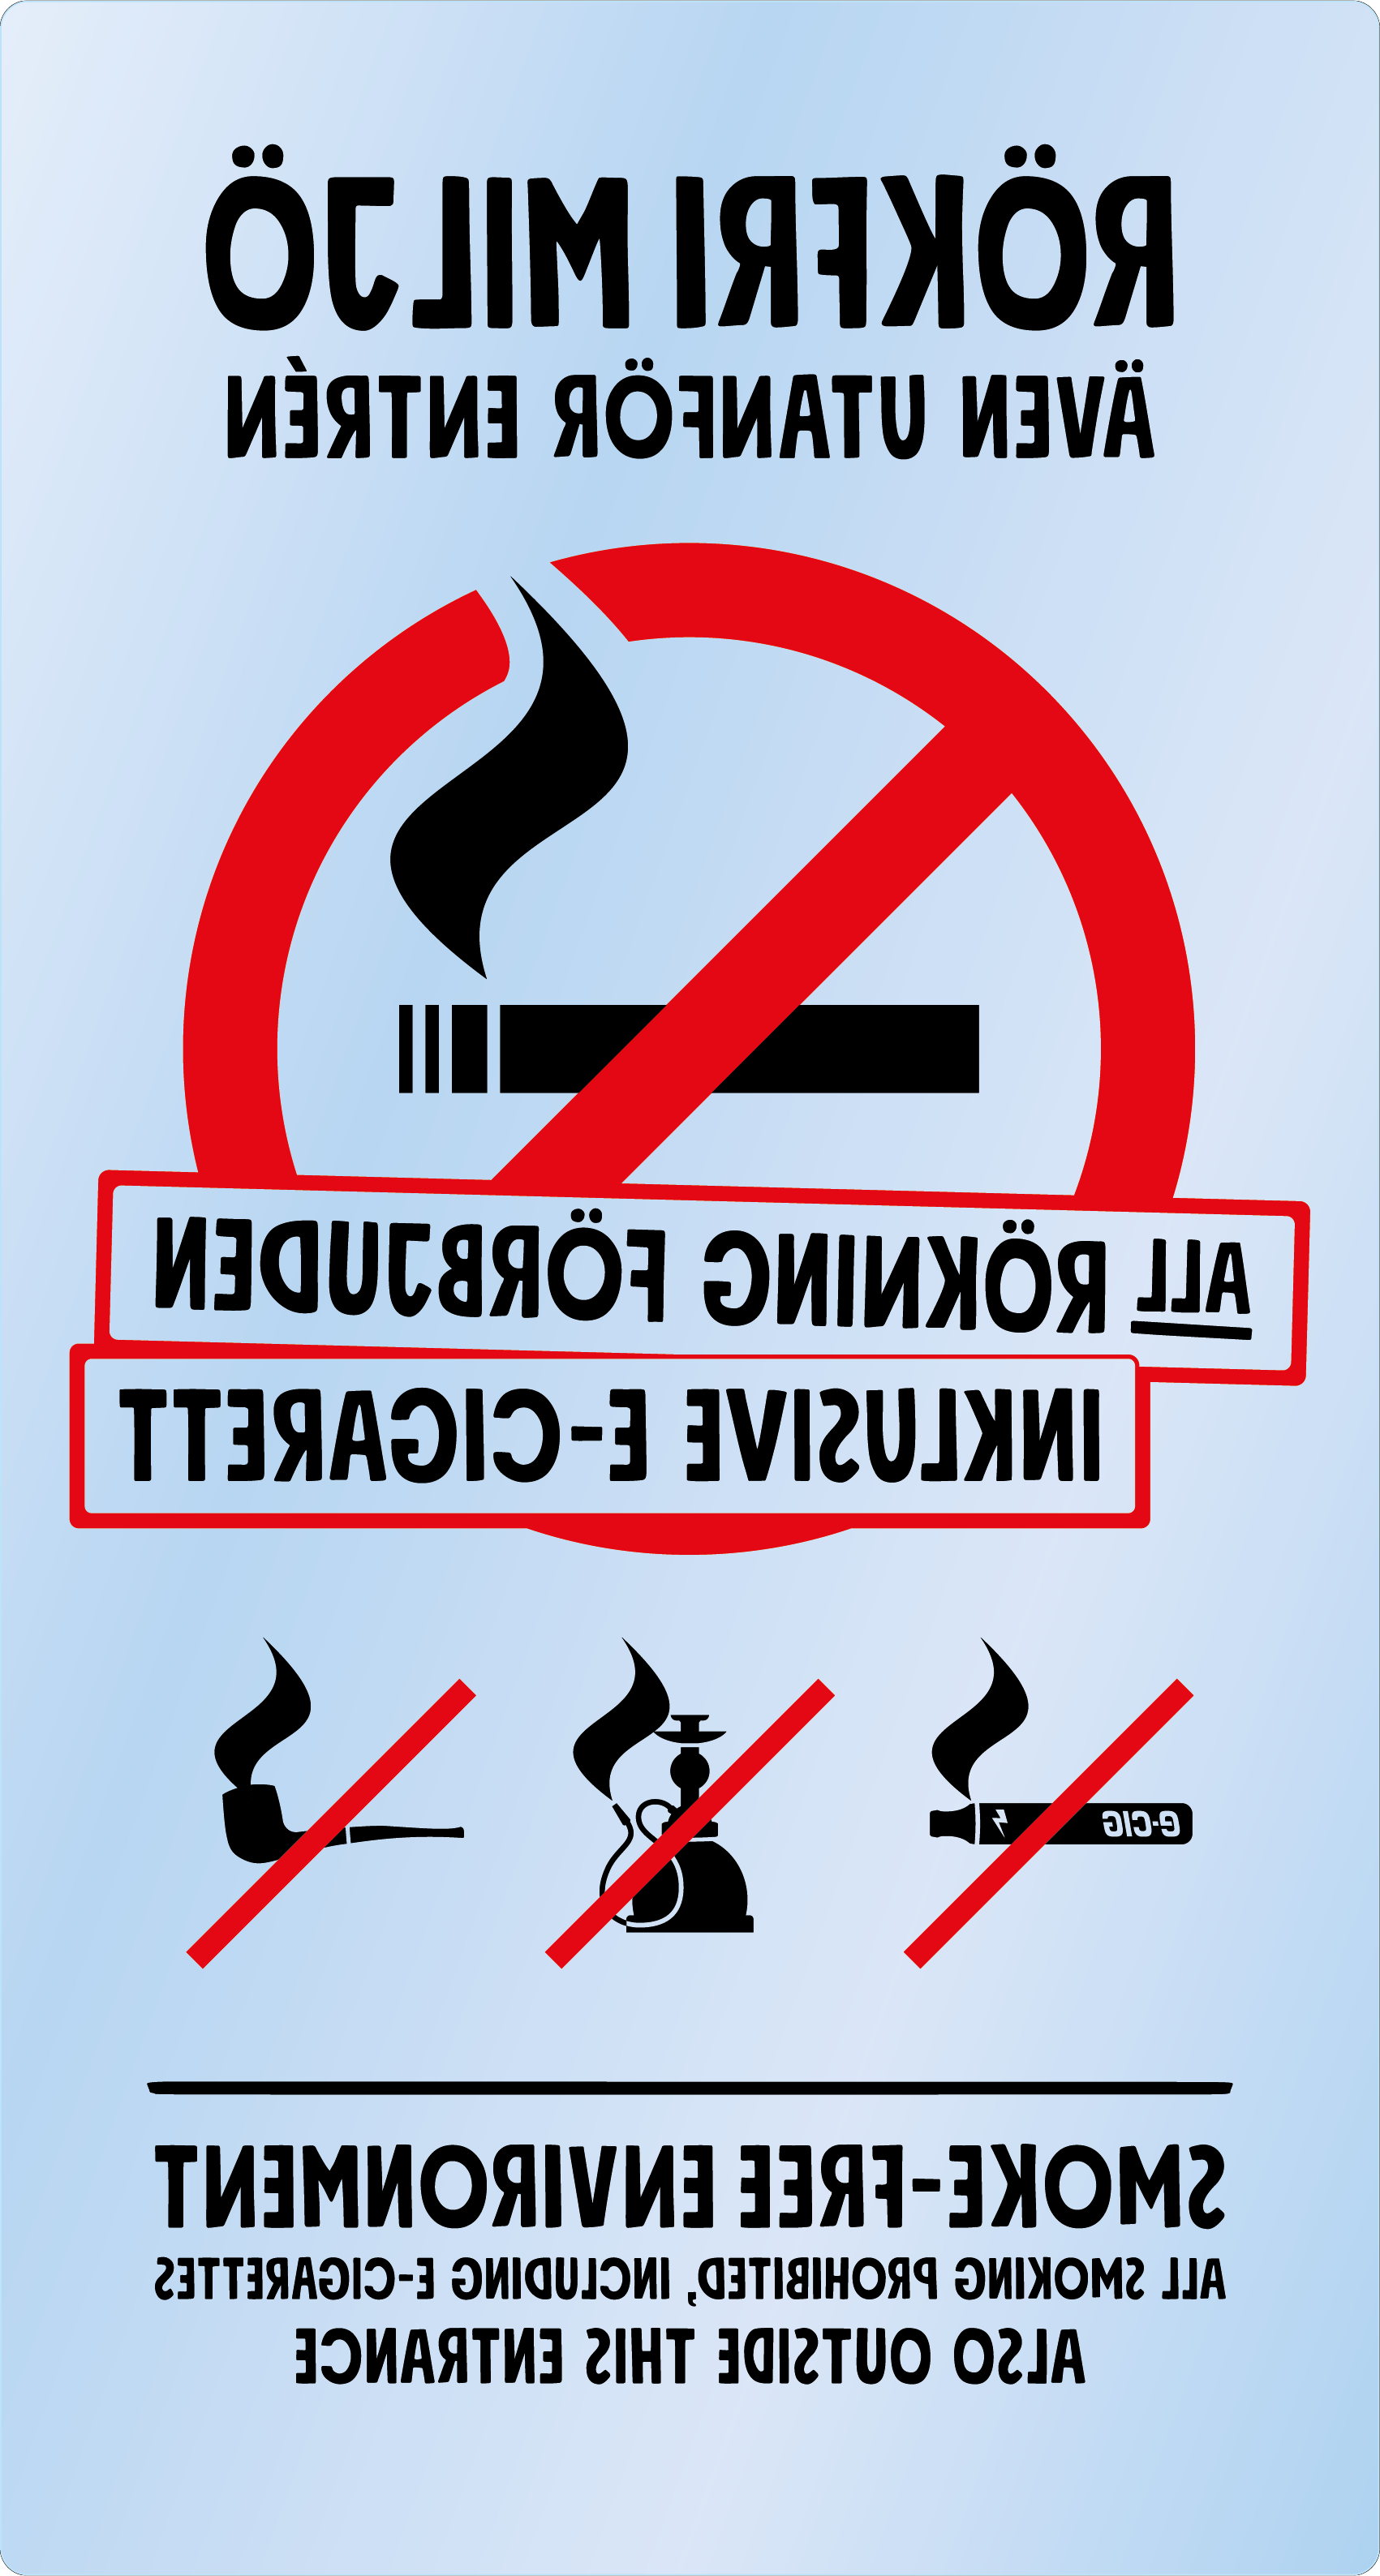 Bild rökförbudsskylt 05A12: Röd+Svart / Transparent